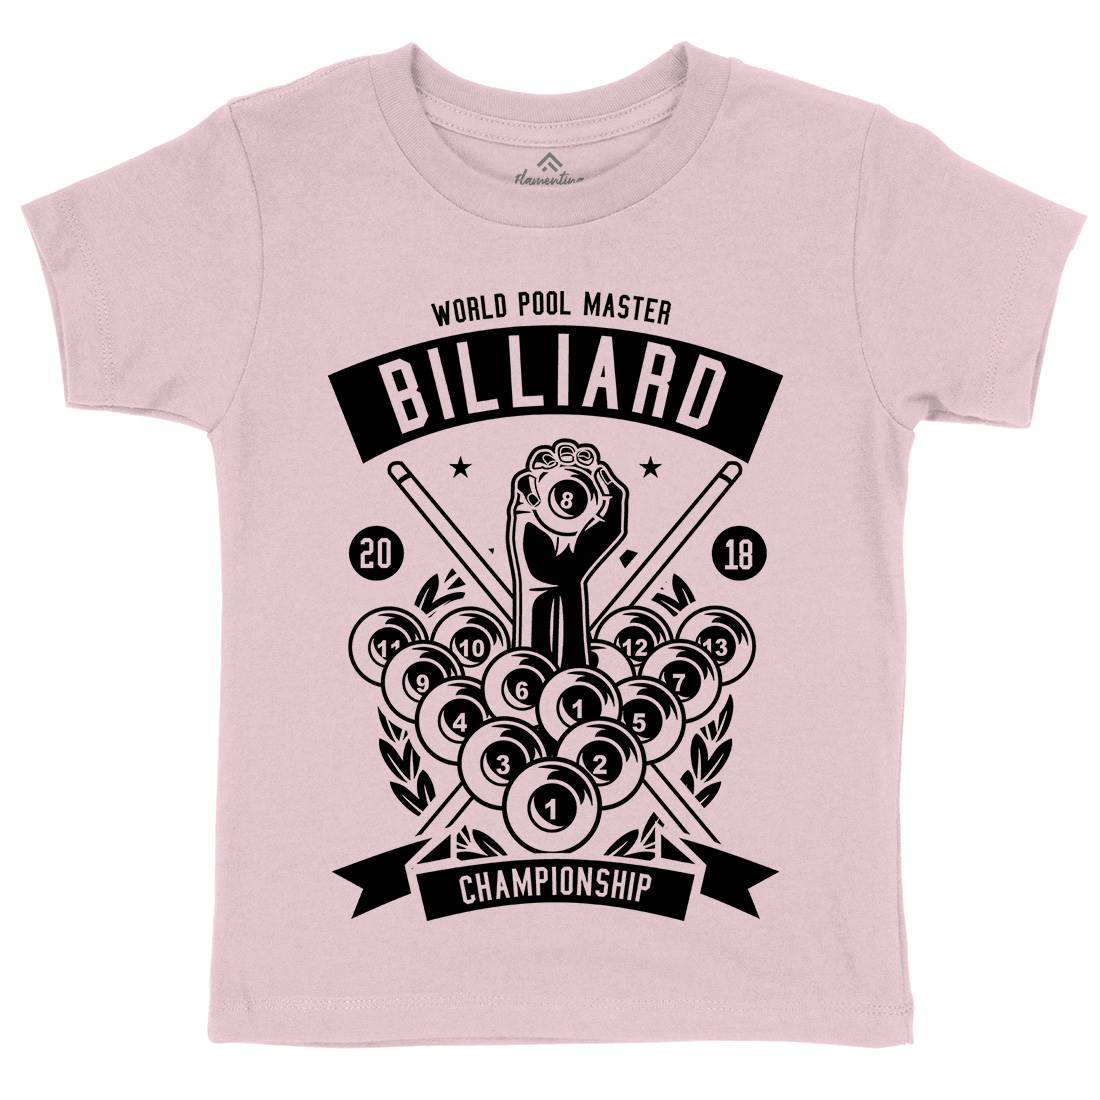 Billiard Championship Kids Crew Neck T-Shirt Sport B499